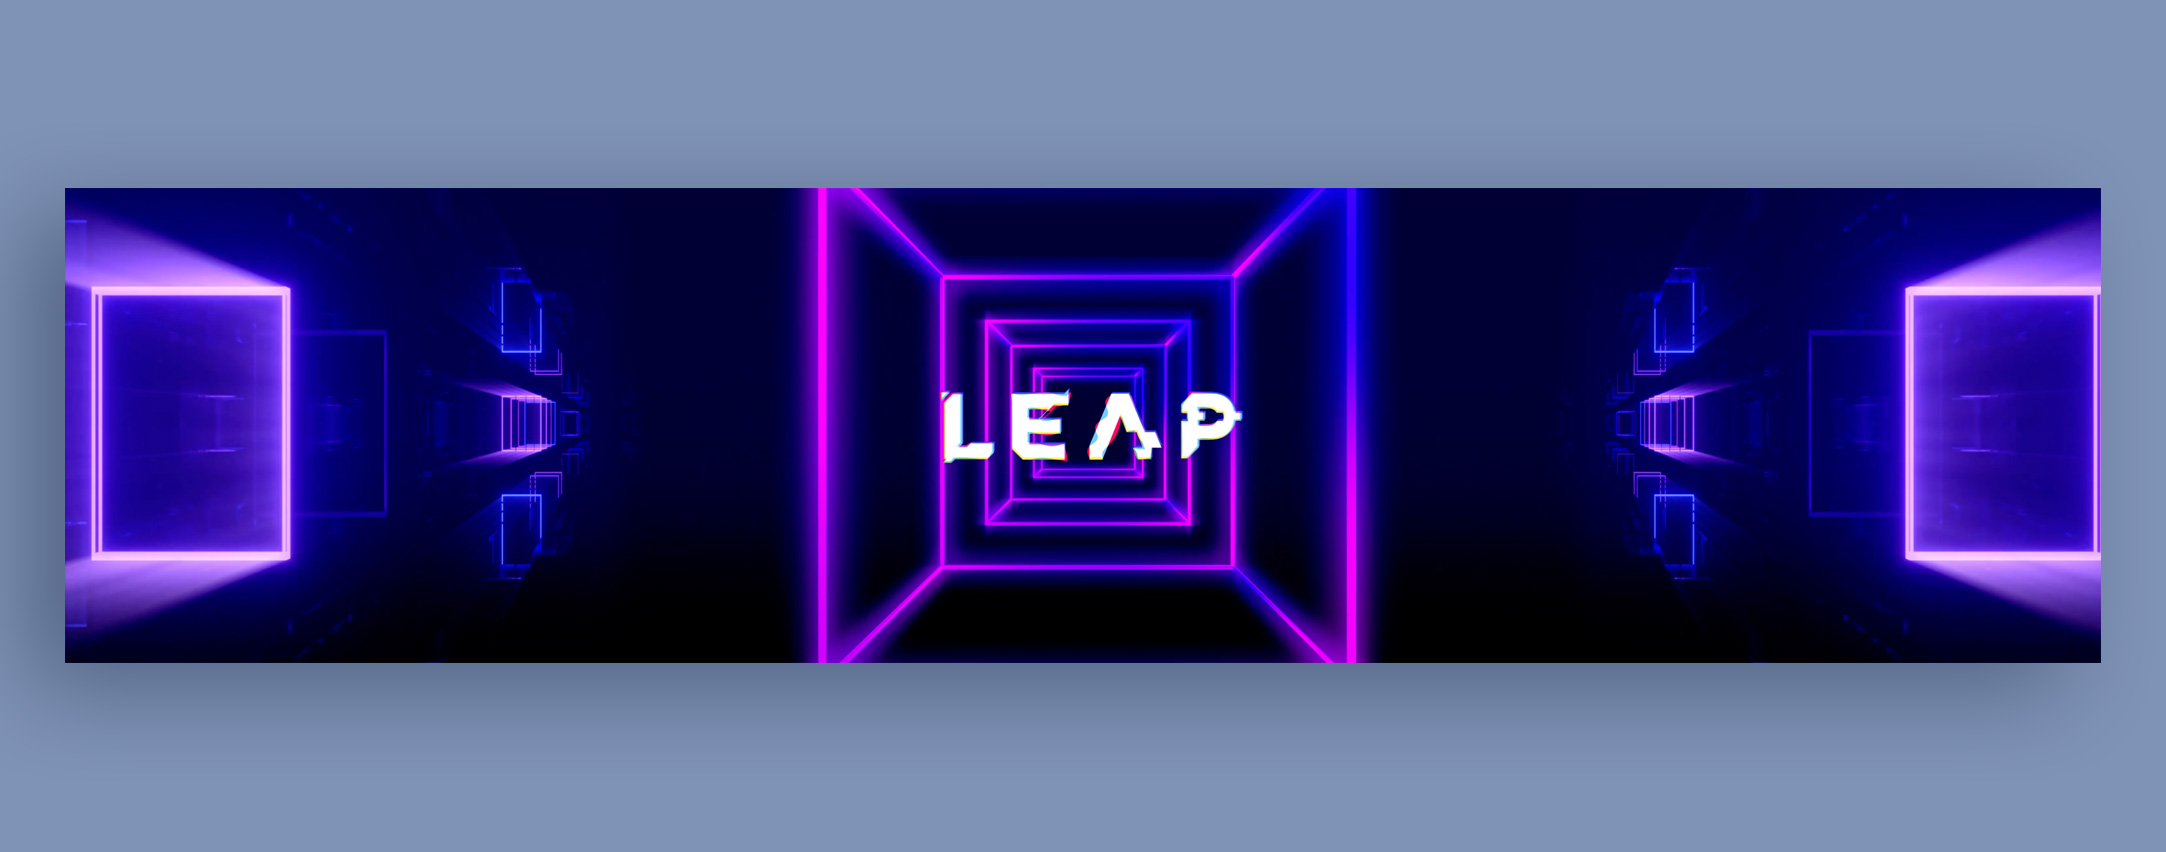 Leap-slider-2